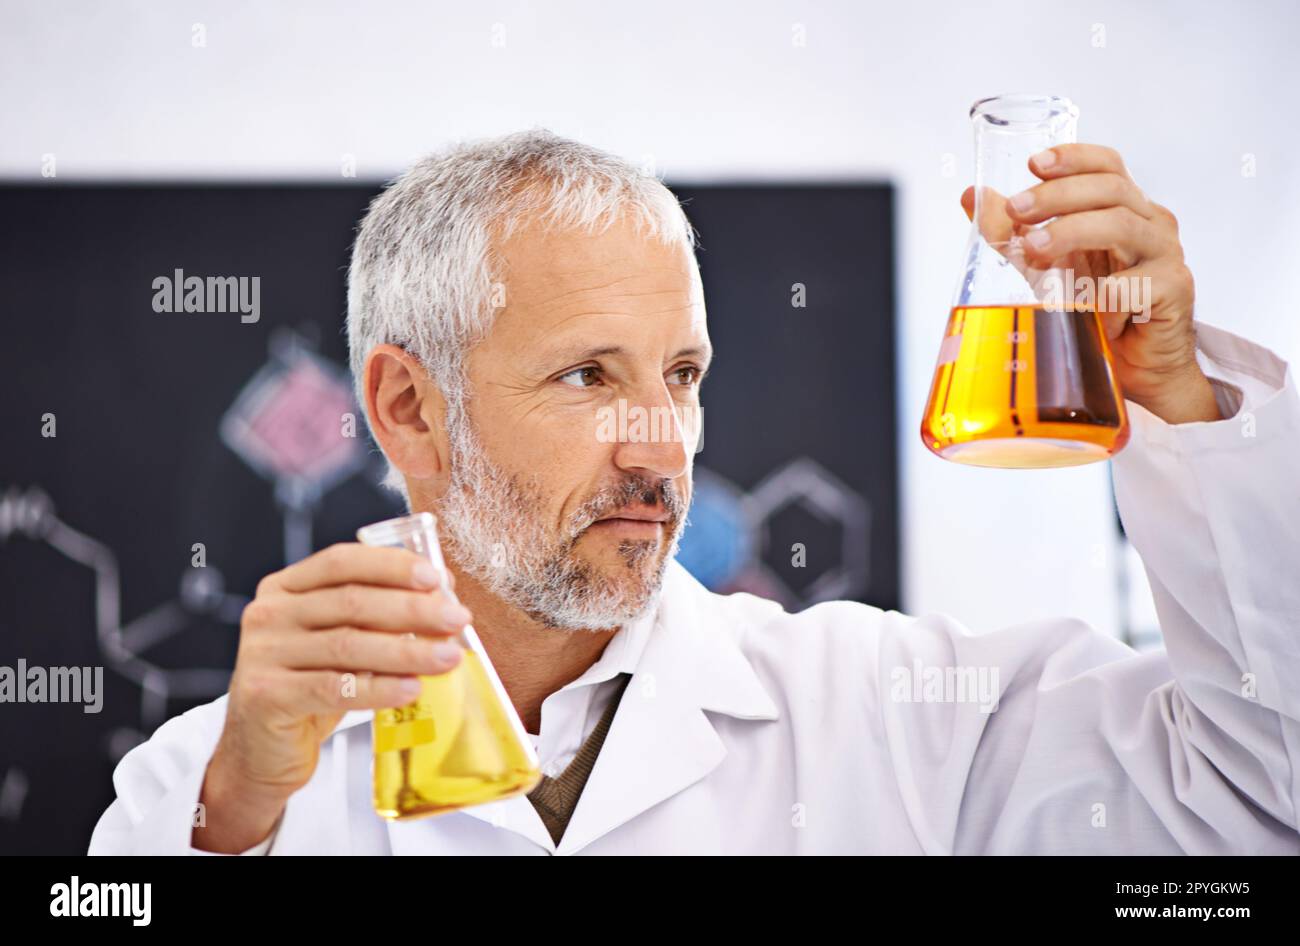 Observation des réactions chimiques en laboratoire. un scientifique mâle mature examinant les résultats d'une expérience dans son laboratoire. Banque D'Images